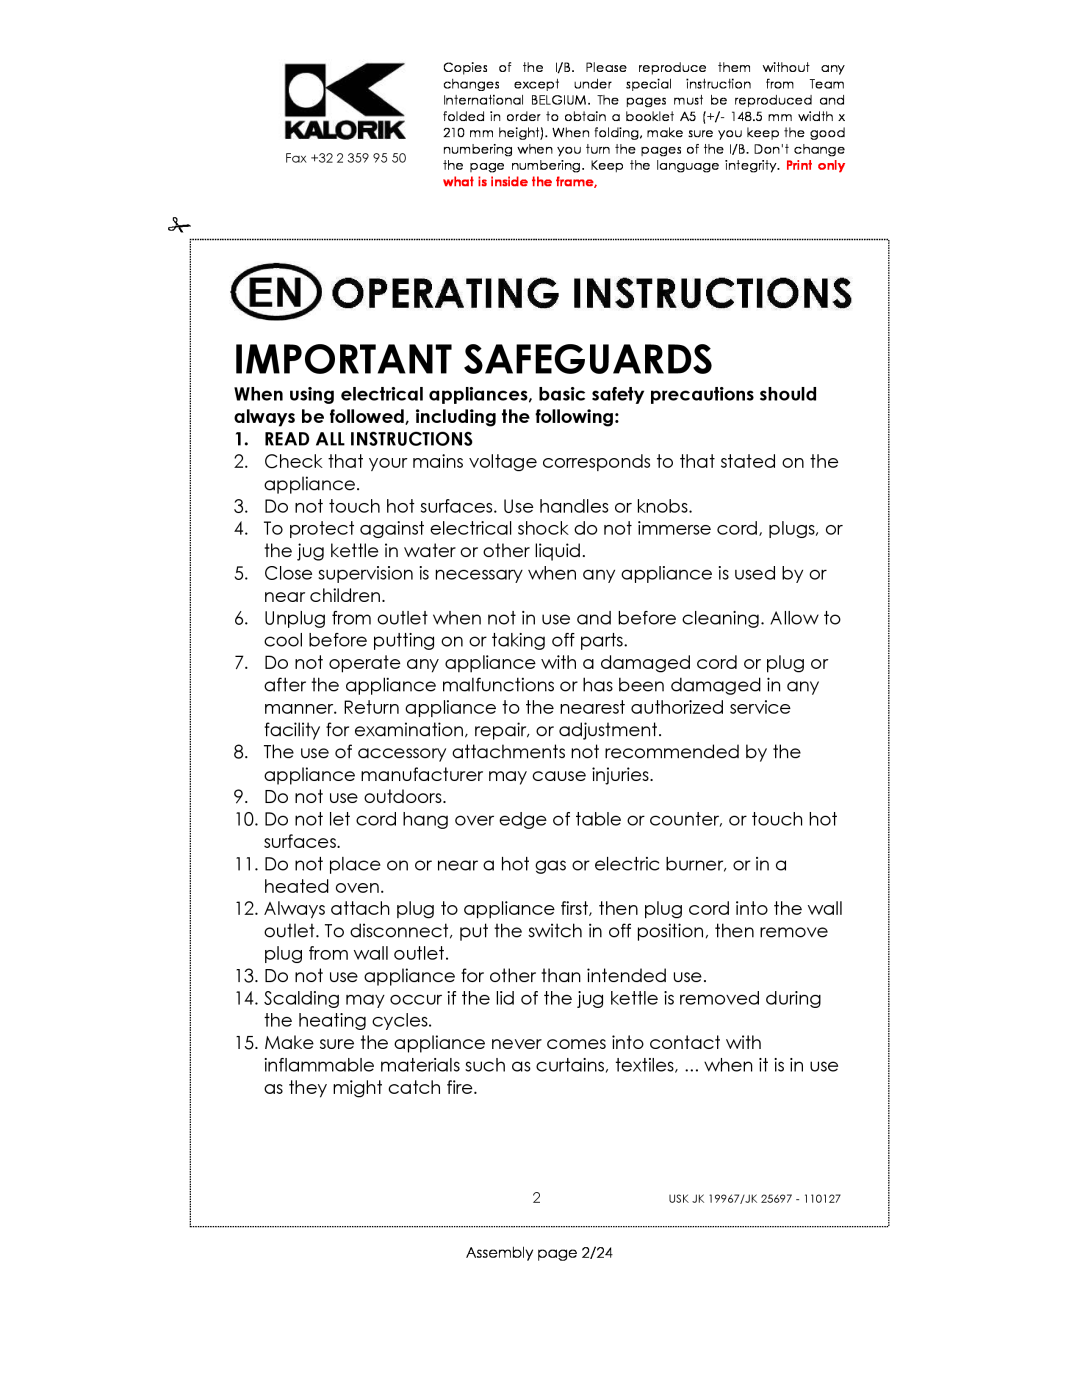 Kalorik JK 19967, JK 25697 manual Important Safeguards, Read All Instructions 